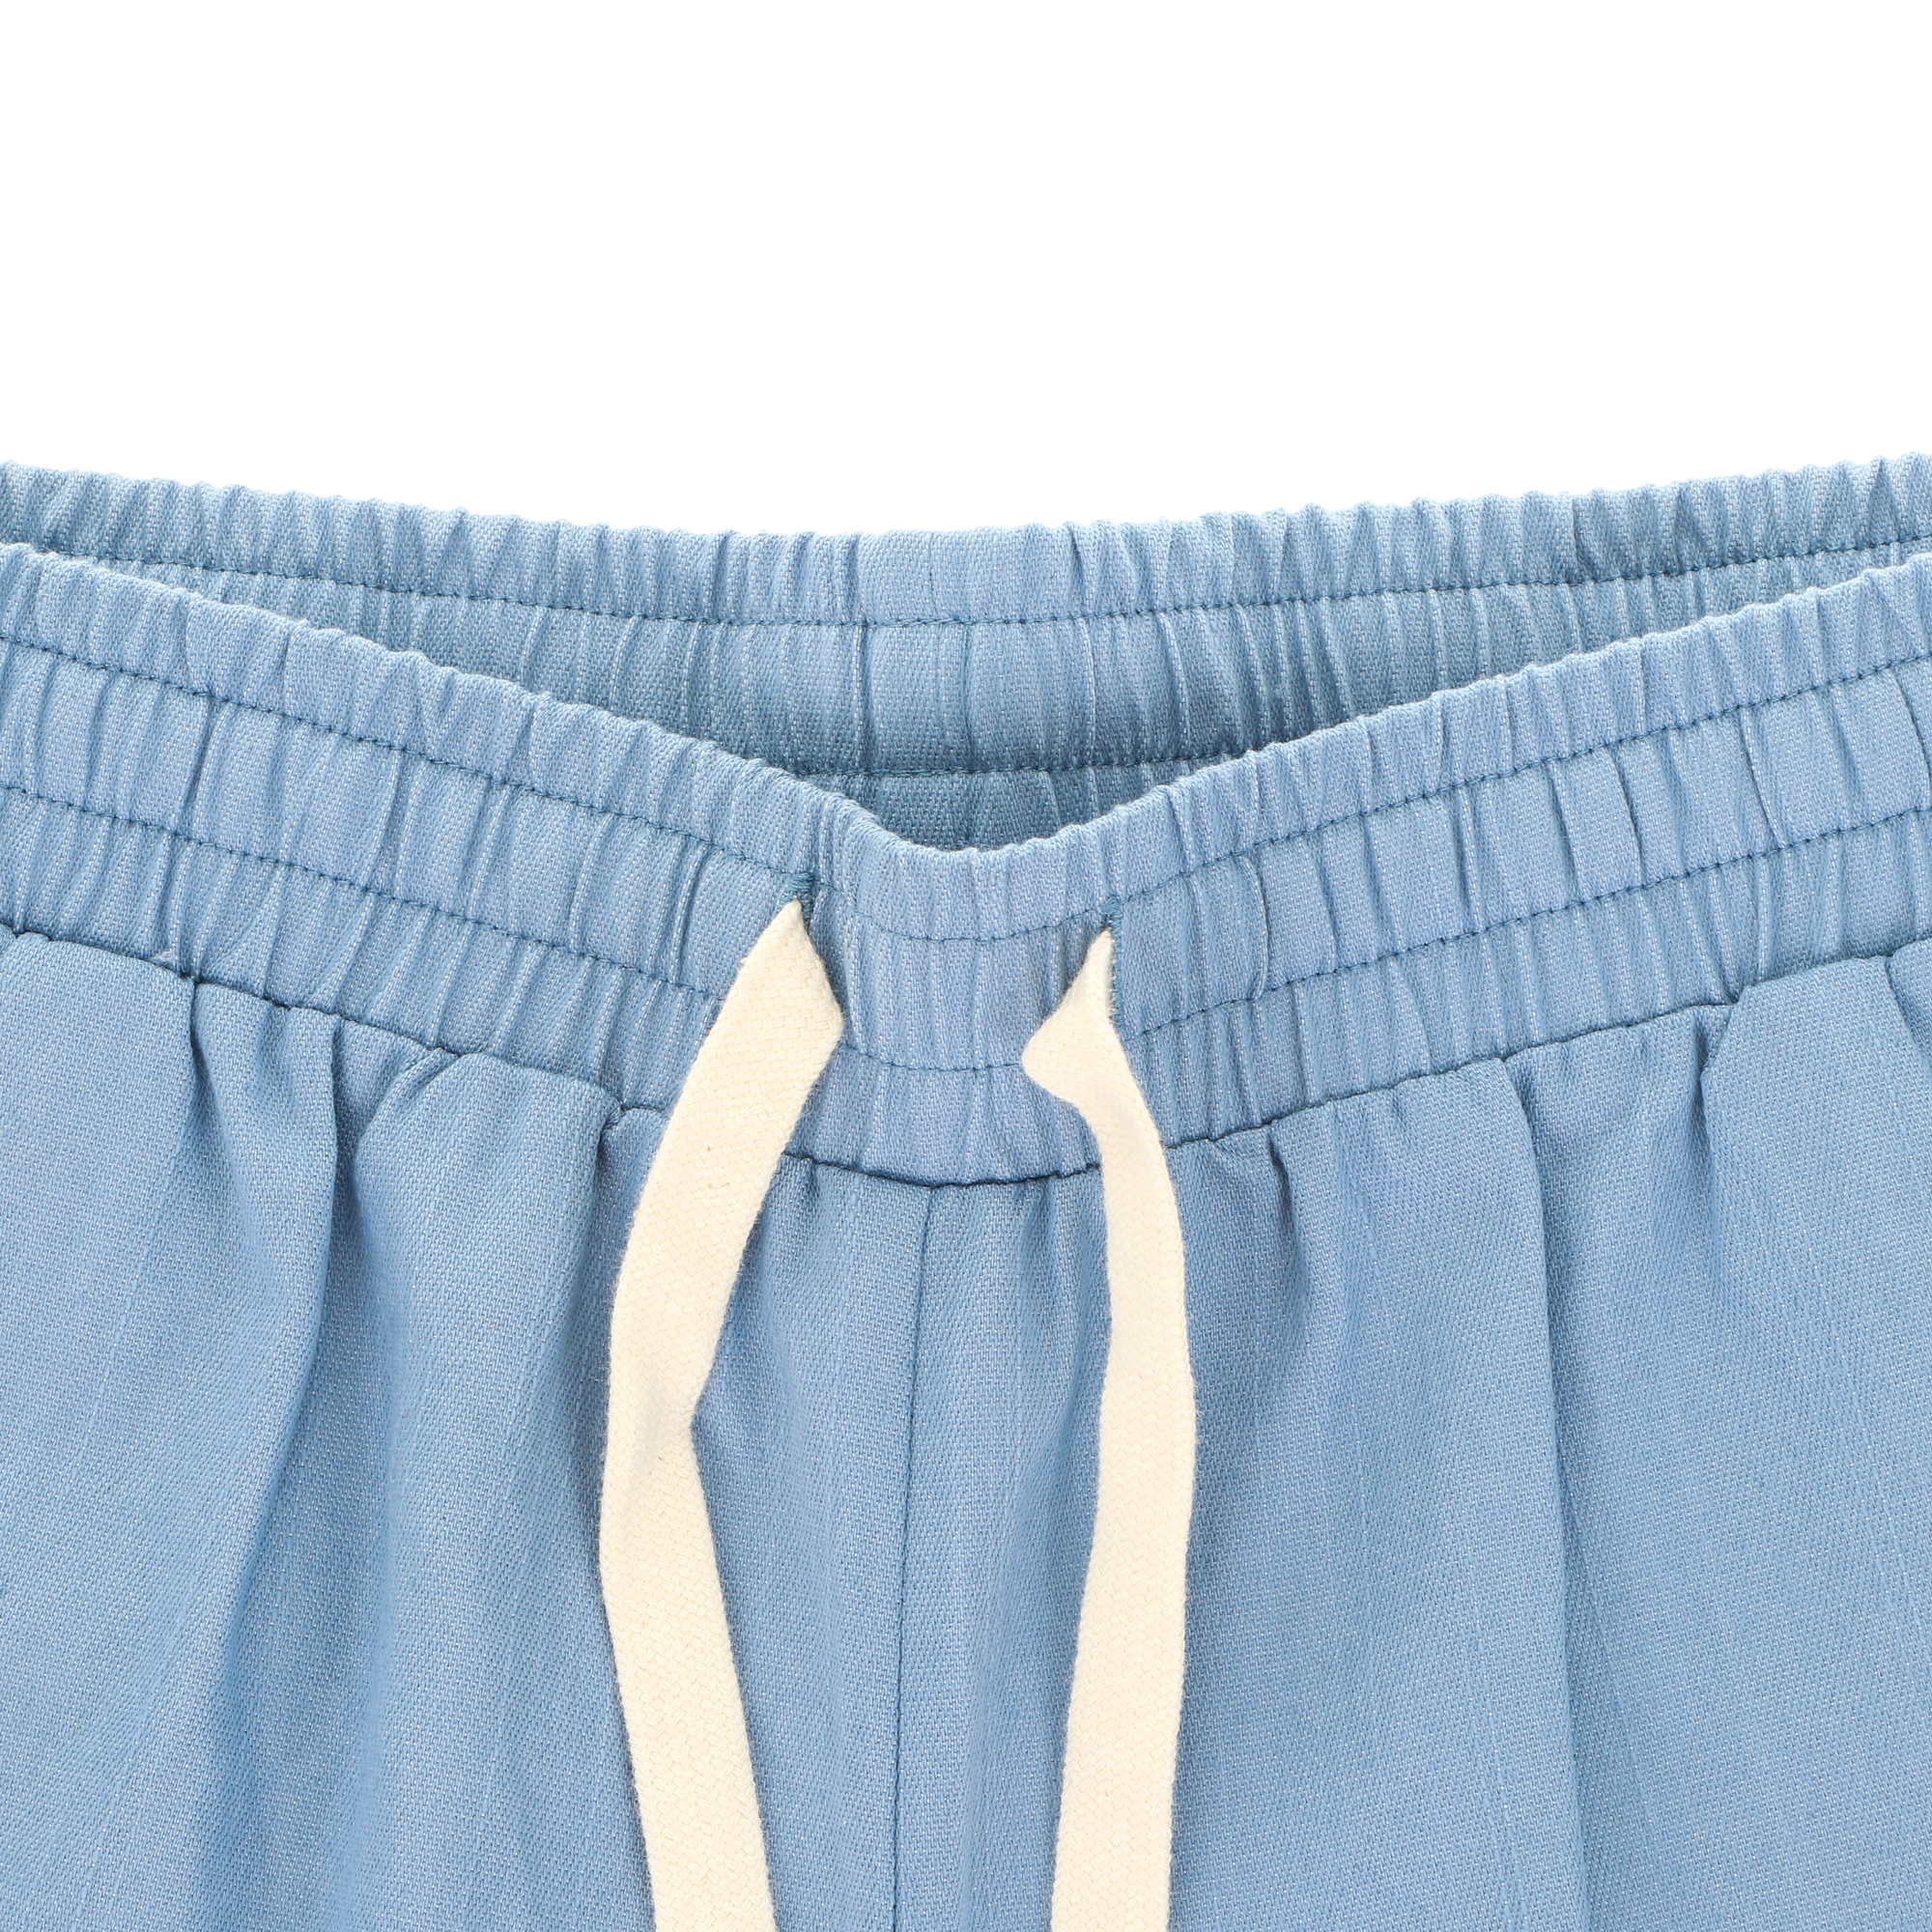 Шорты женские Joyord голубые XL, цвет голубой, размер XL - фото 2